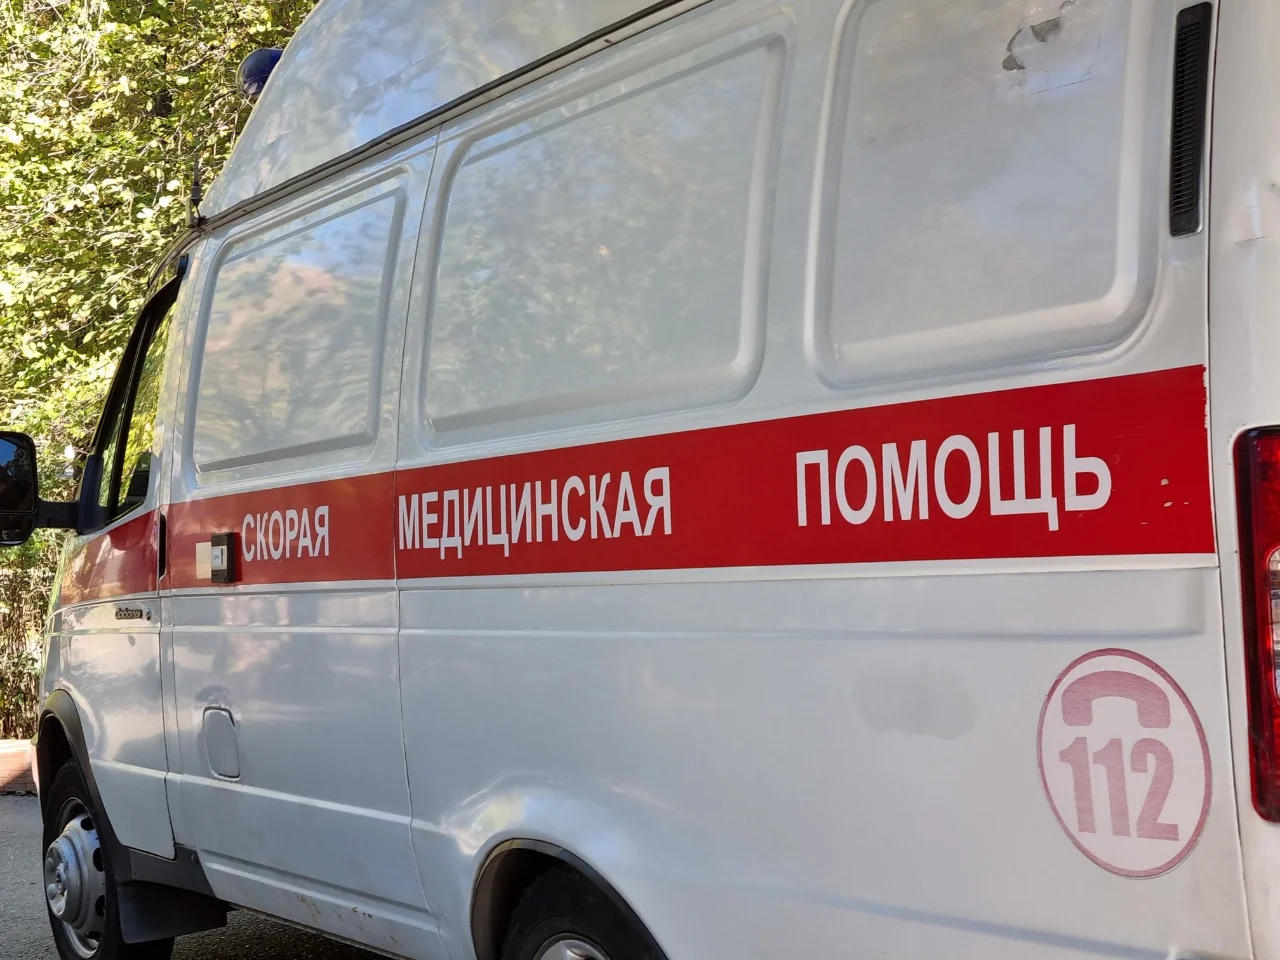 В Ростовской области в домашнем бассейне утонул 2-летний малыш